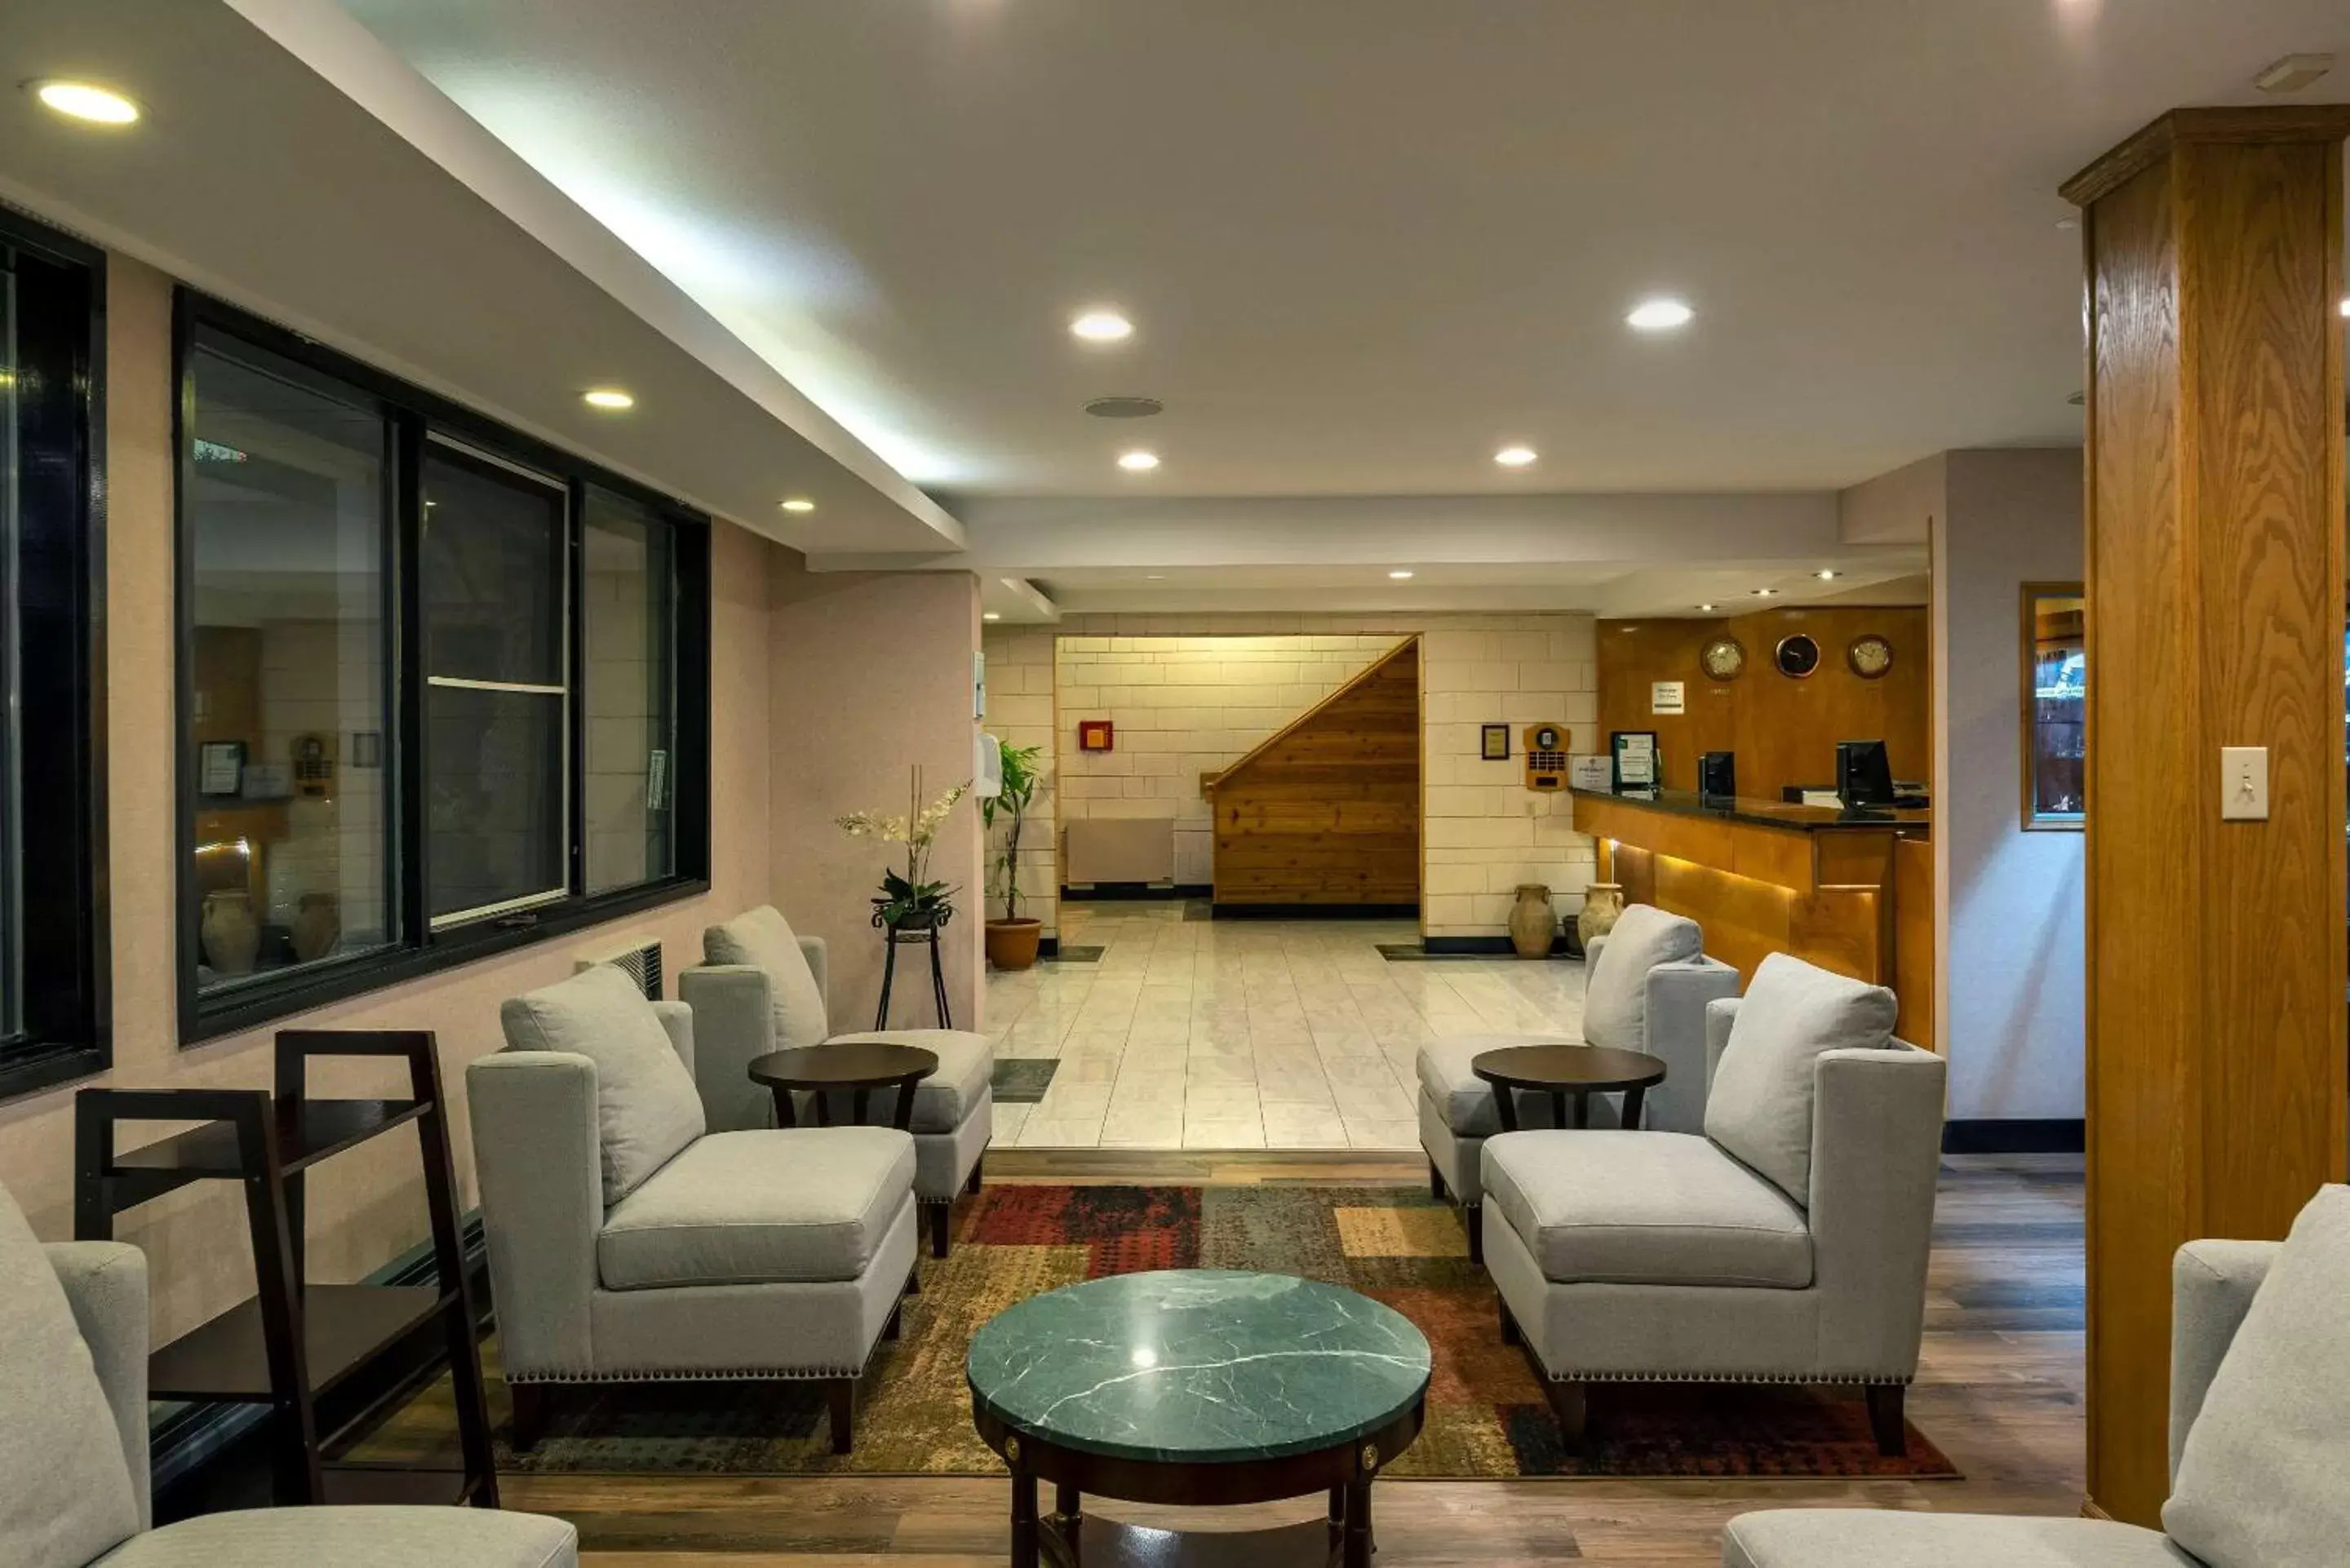 Lobby or reception, Lobby/Reception in Quality Inn